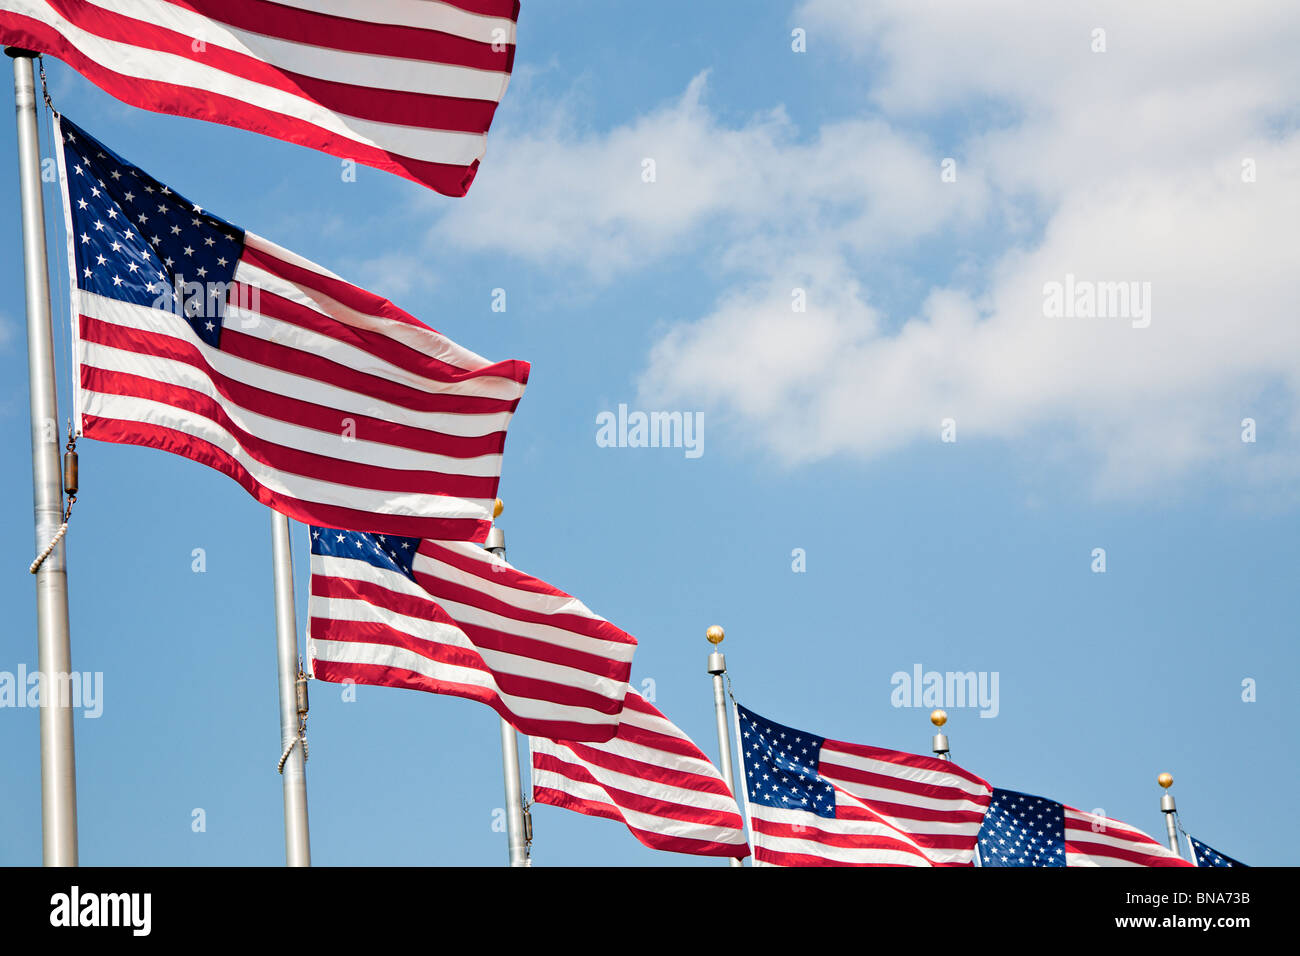 Washington DC - Sep 2009 - amerikanische Flaggen bilden einen Kreis um das Washington Monument in Washington DC Stockfoto